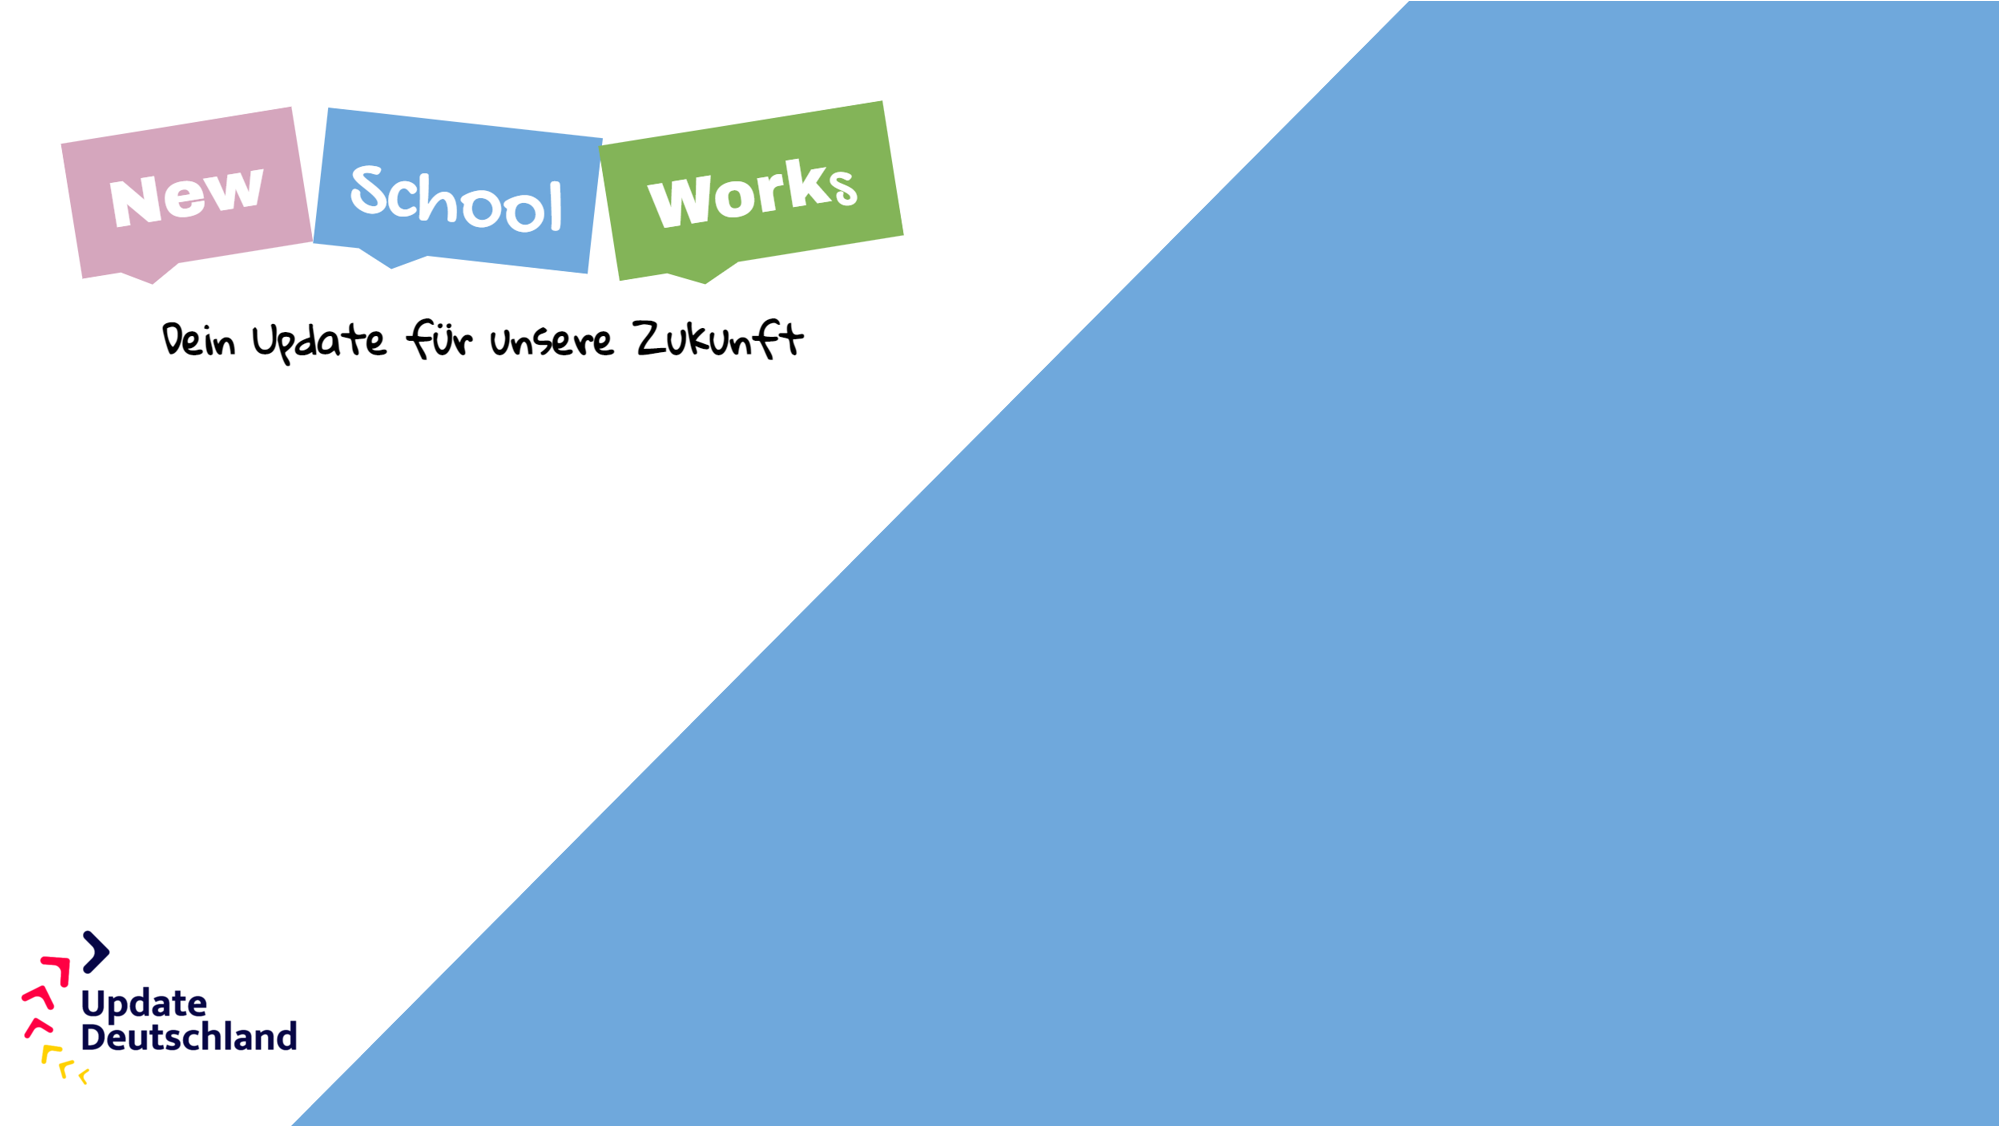 Update Deutschland - NewSchoolWorkS - dein Update für unsere Zukunft